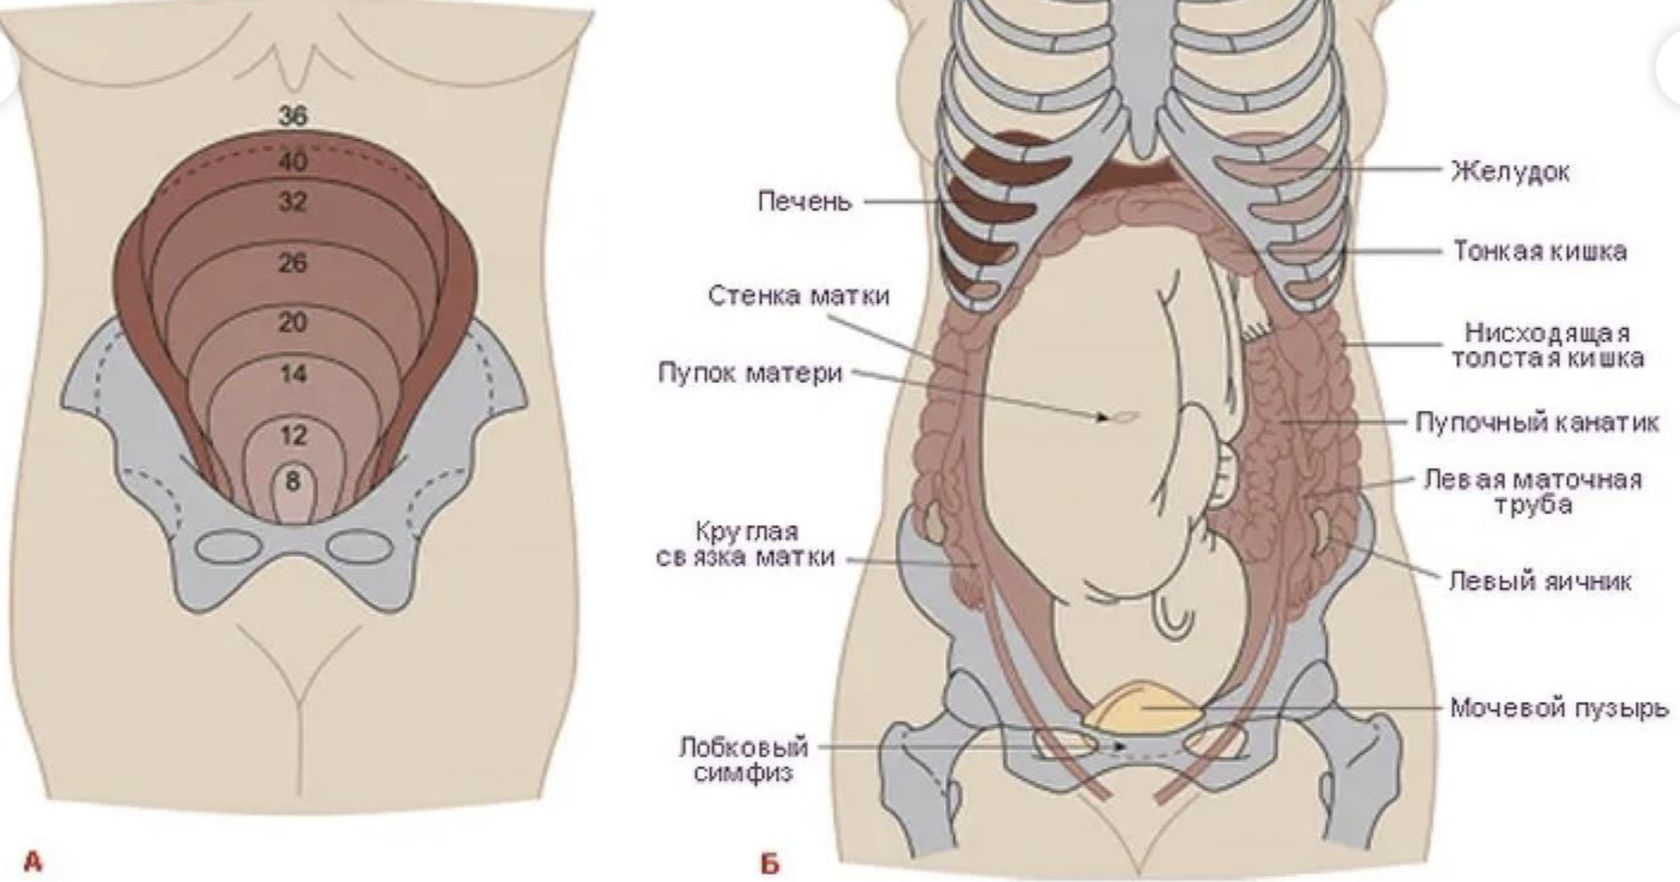 Удлиненная матка при беременности. Расположение органов у беременной. Анатомия беременной женщины внутренние органы. Строение органов при беременности. Строение внутренних органов беременной.